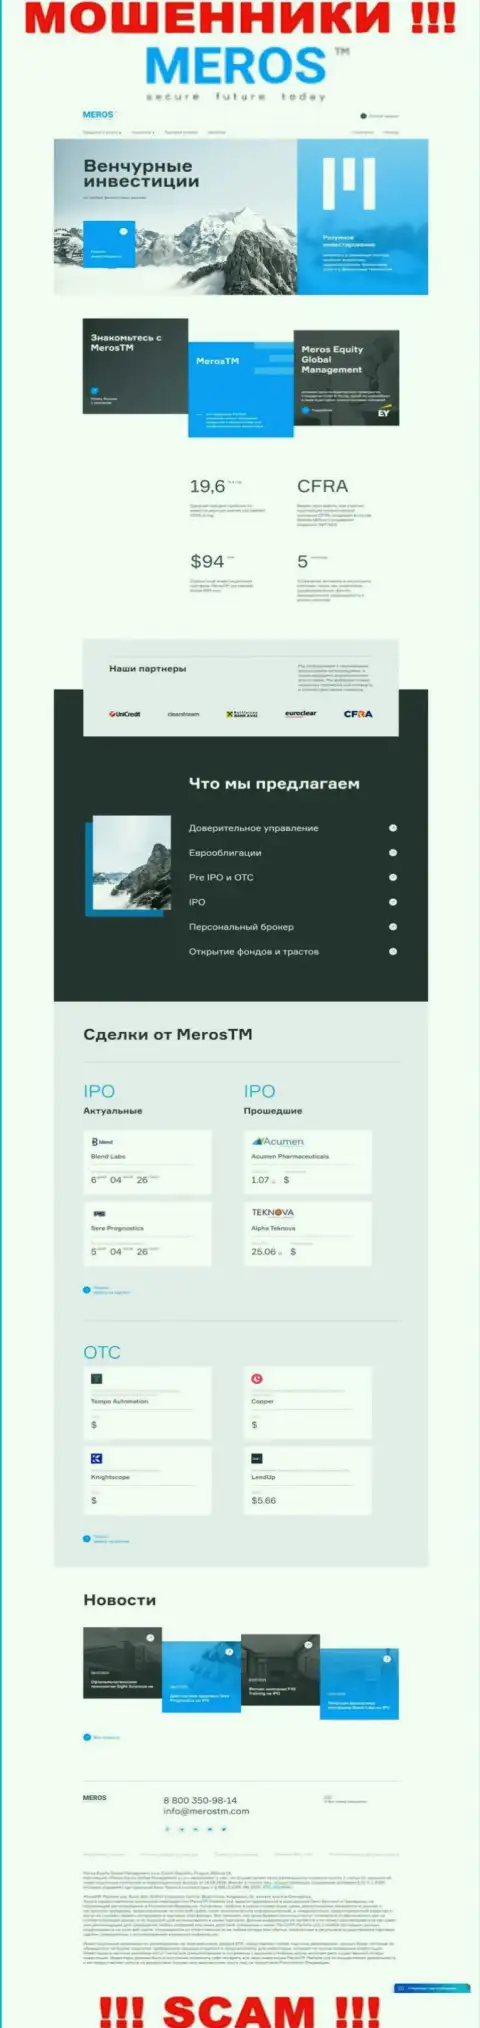 Обзор официального сайта ворюг MerosTM Com